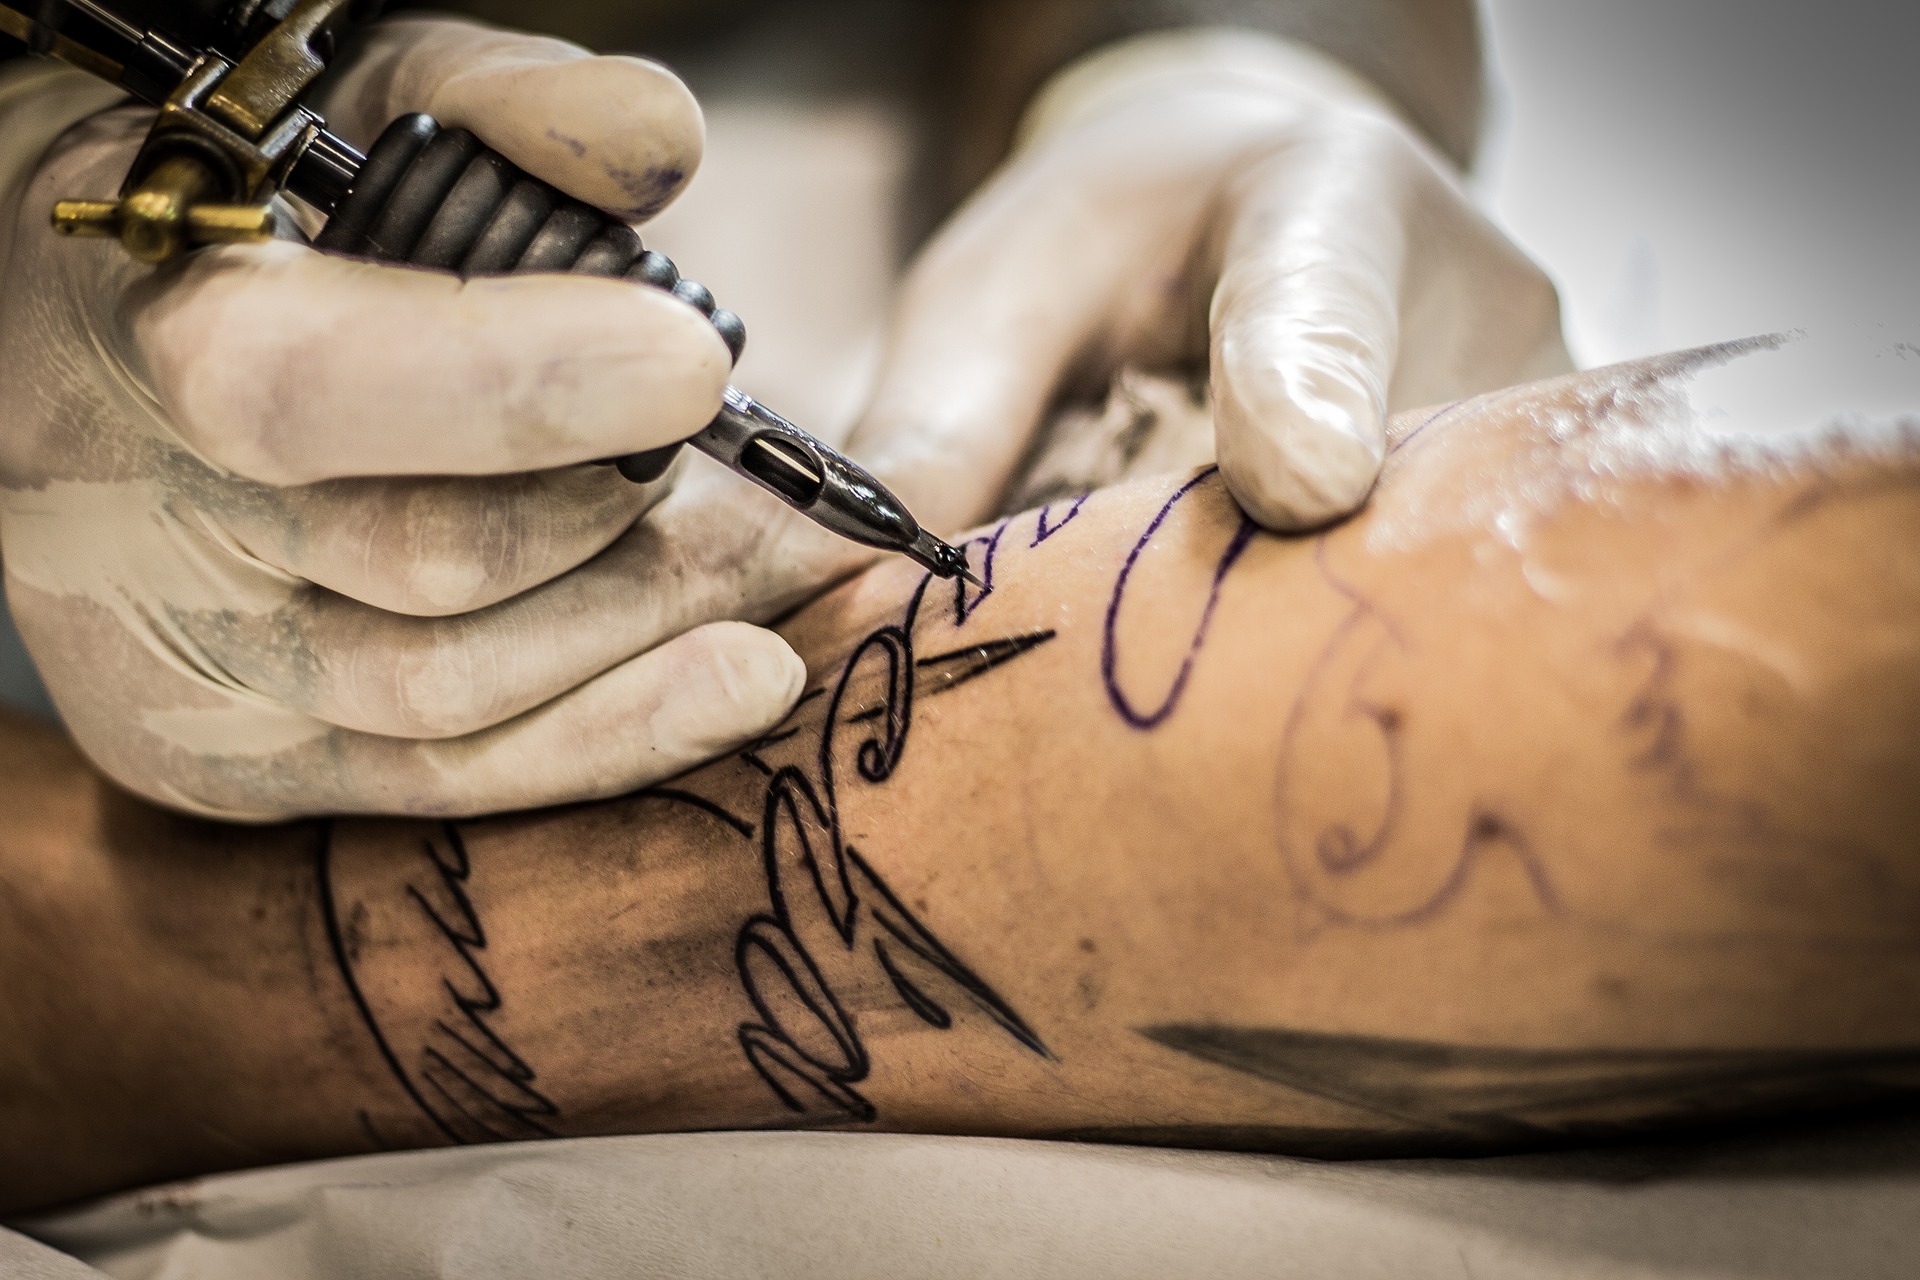 Tatuaże: czy mogą szkodzić zdrowiu?